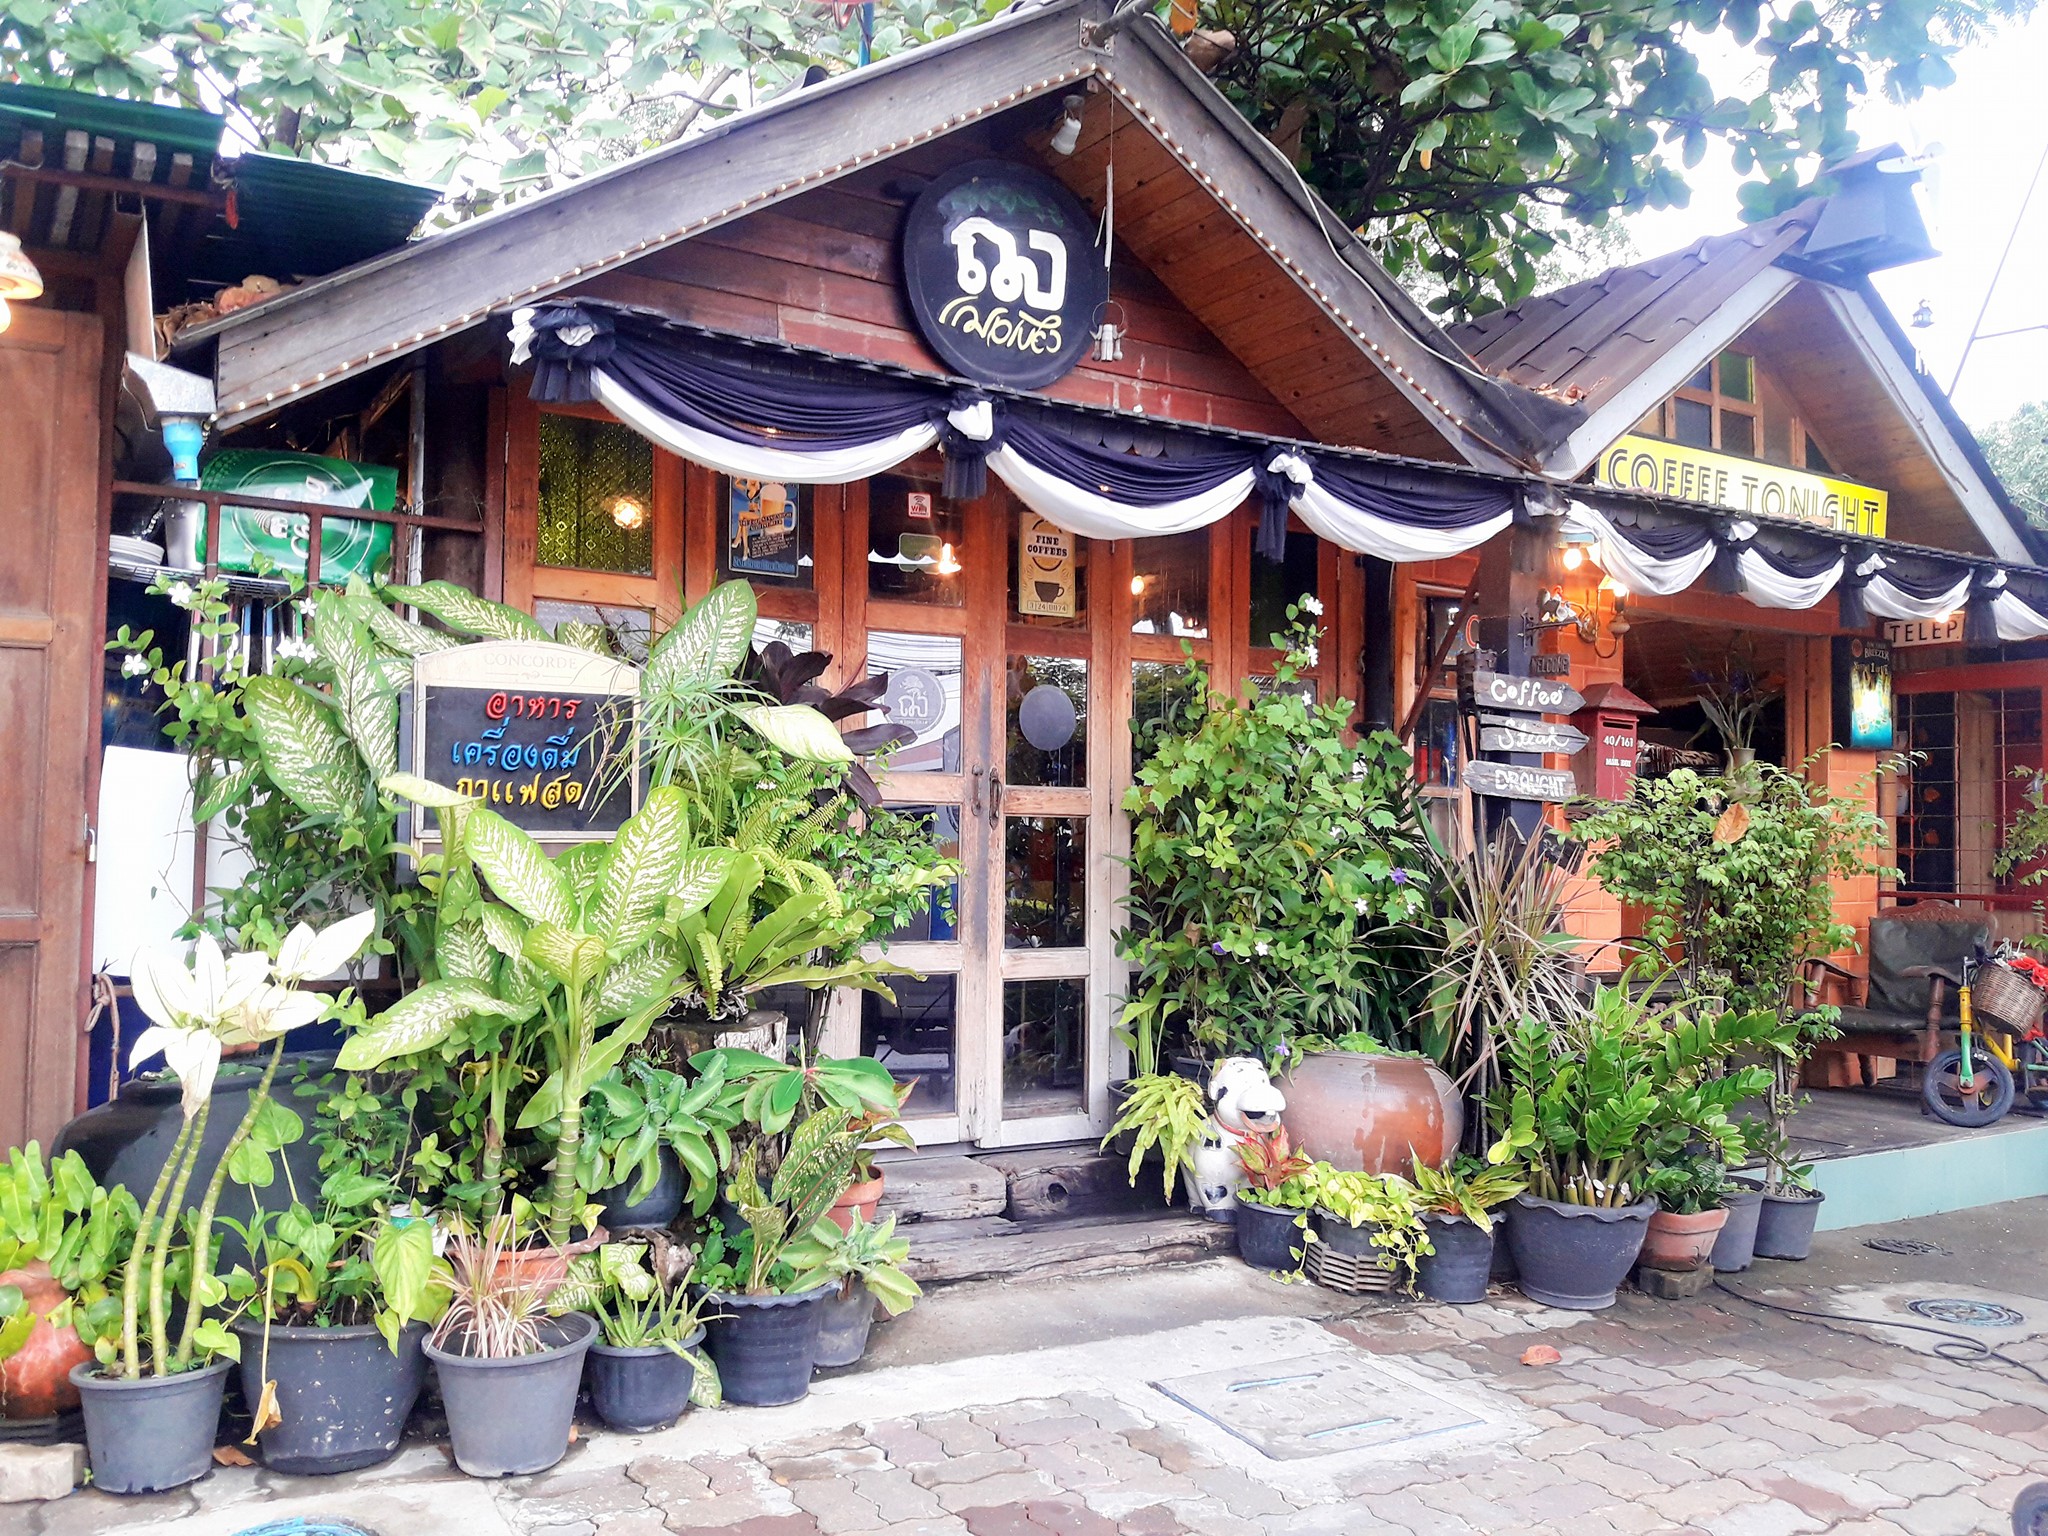 เฌอเบียง (Che Bien Cafe) : กรุงเทพมหานคร (Bangkok)